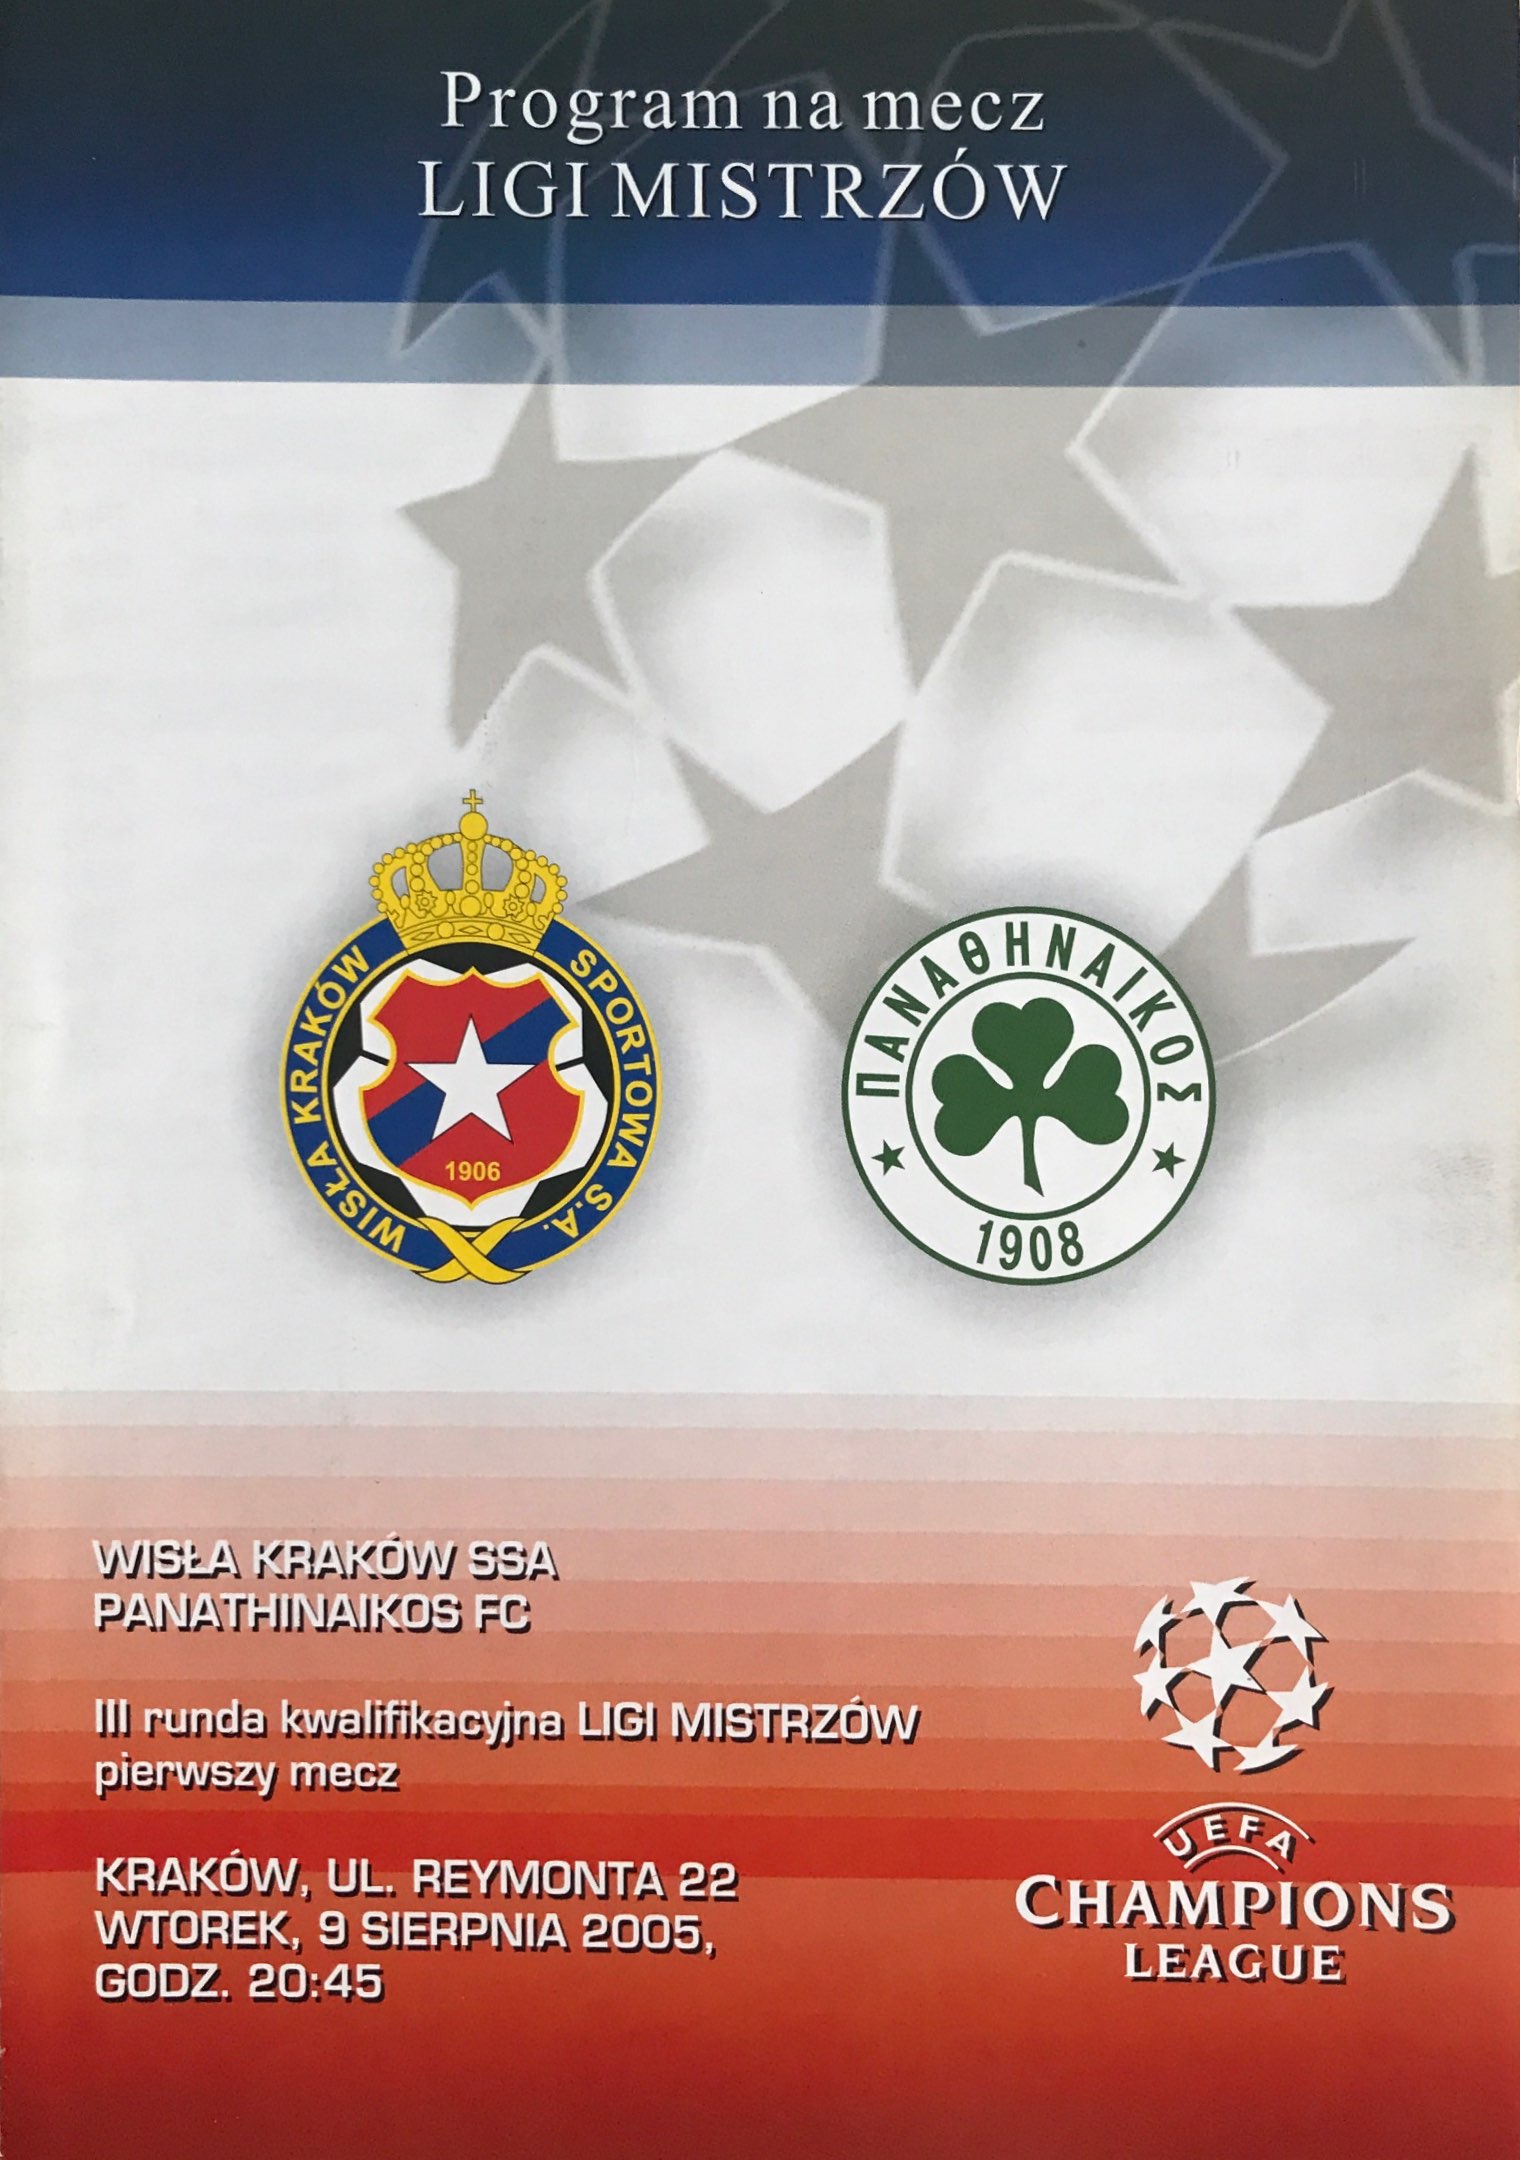 Program meczowy Wisła Kraków - Panathinaikos 3:1 (09.08.2005).